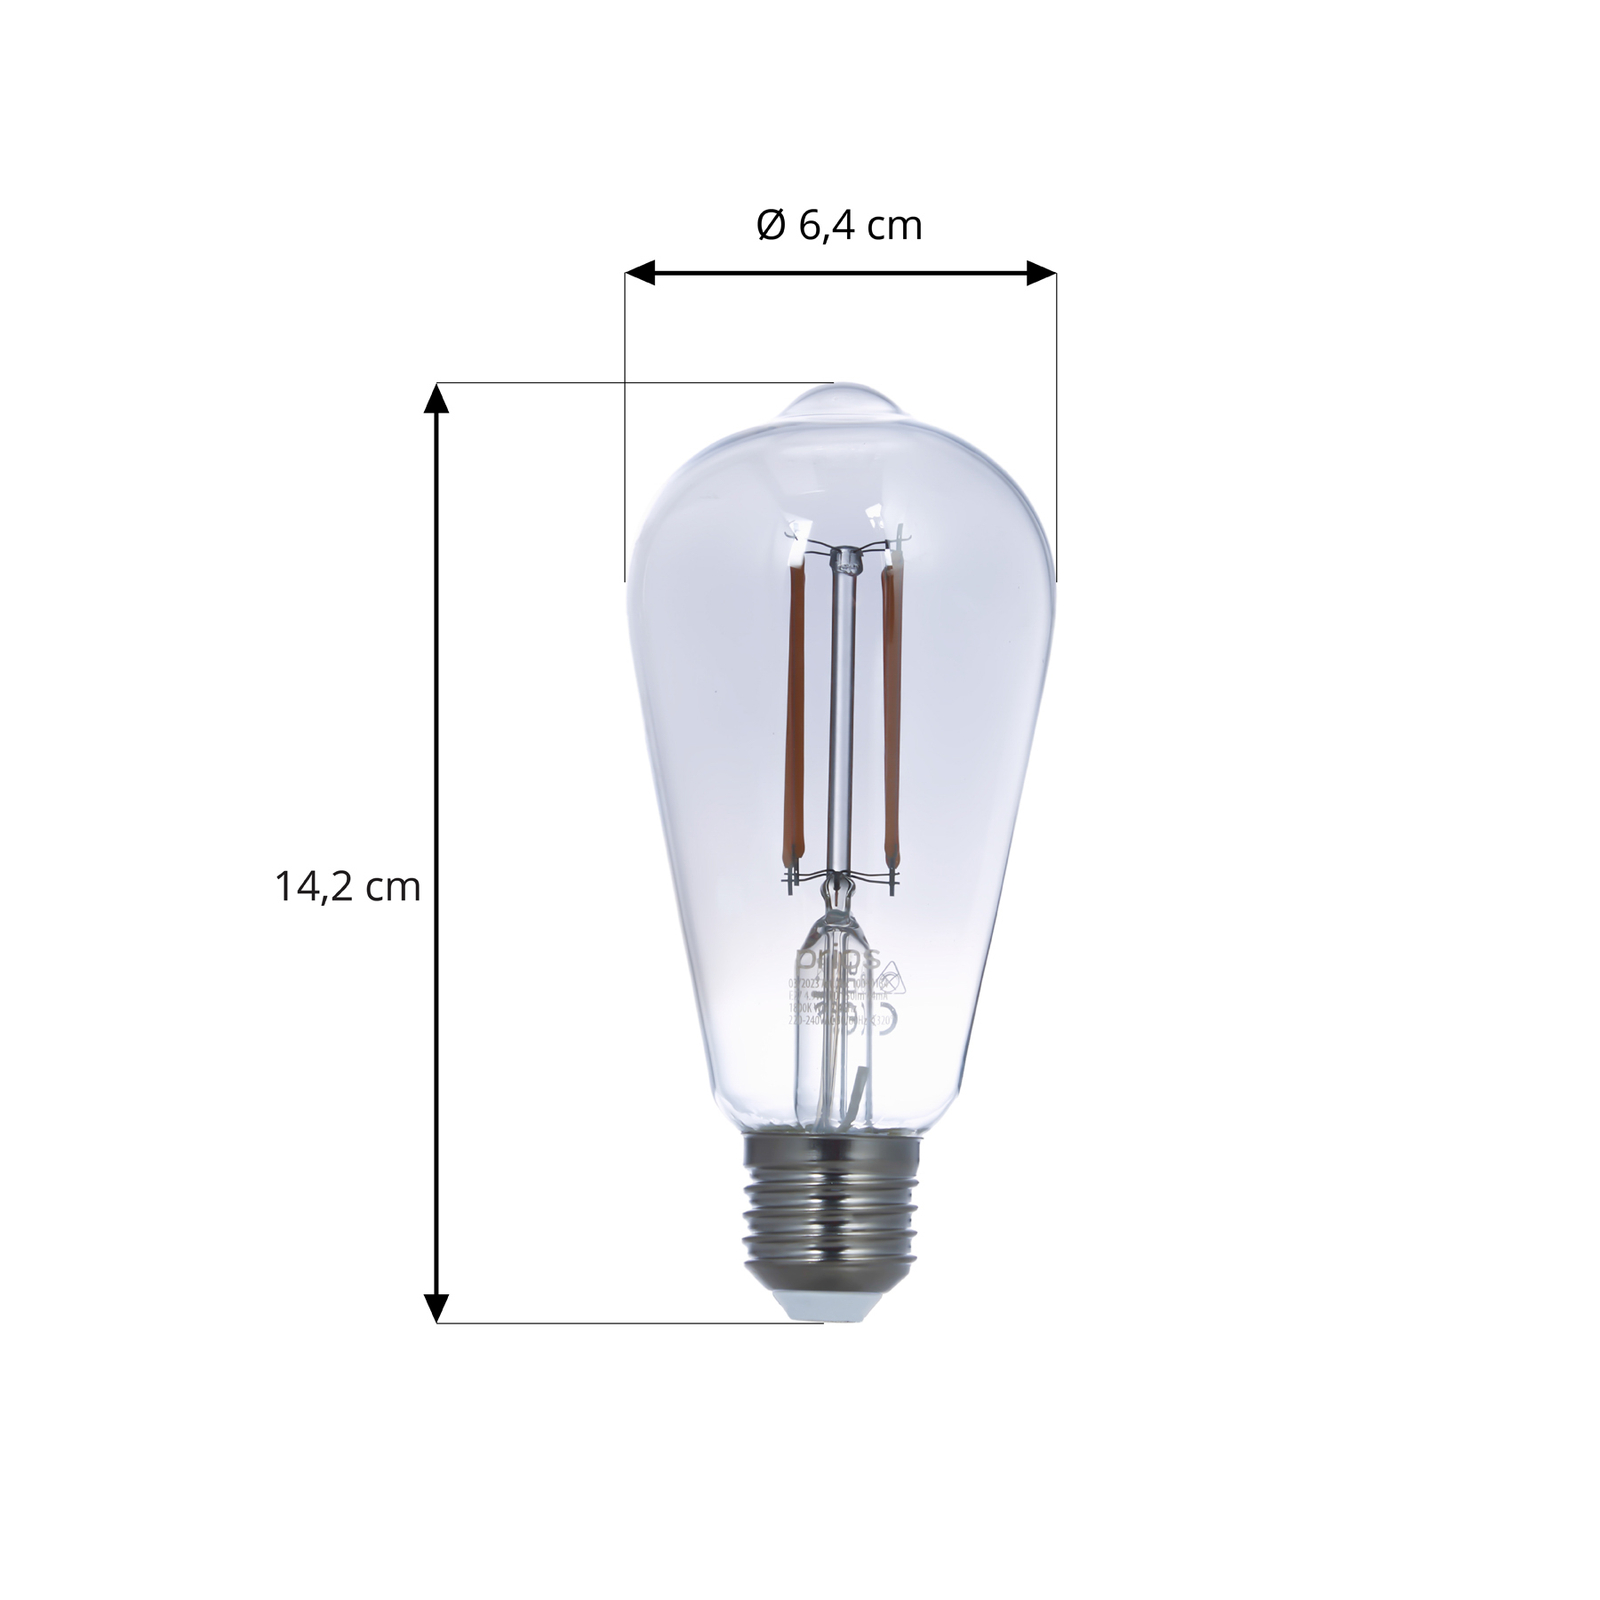 Smart LED-Filament E27 ST64 rauchgrau WLAN 4,9W